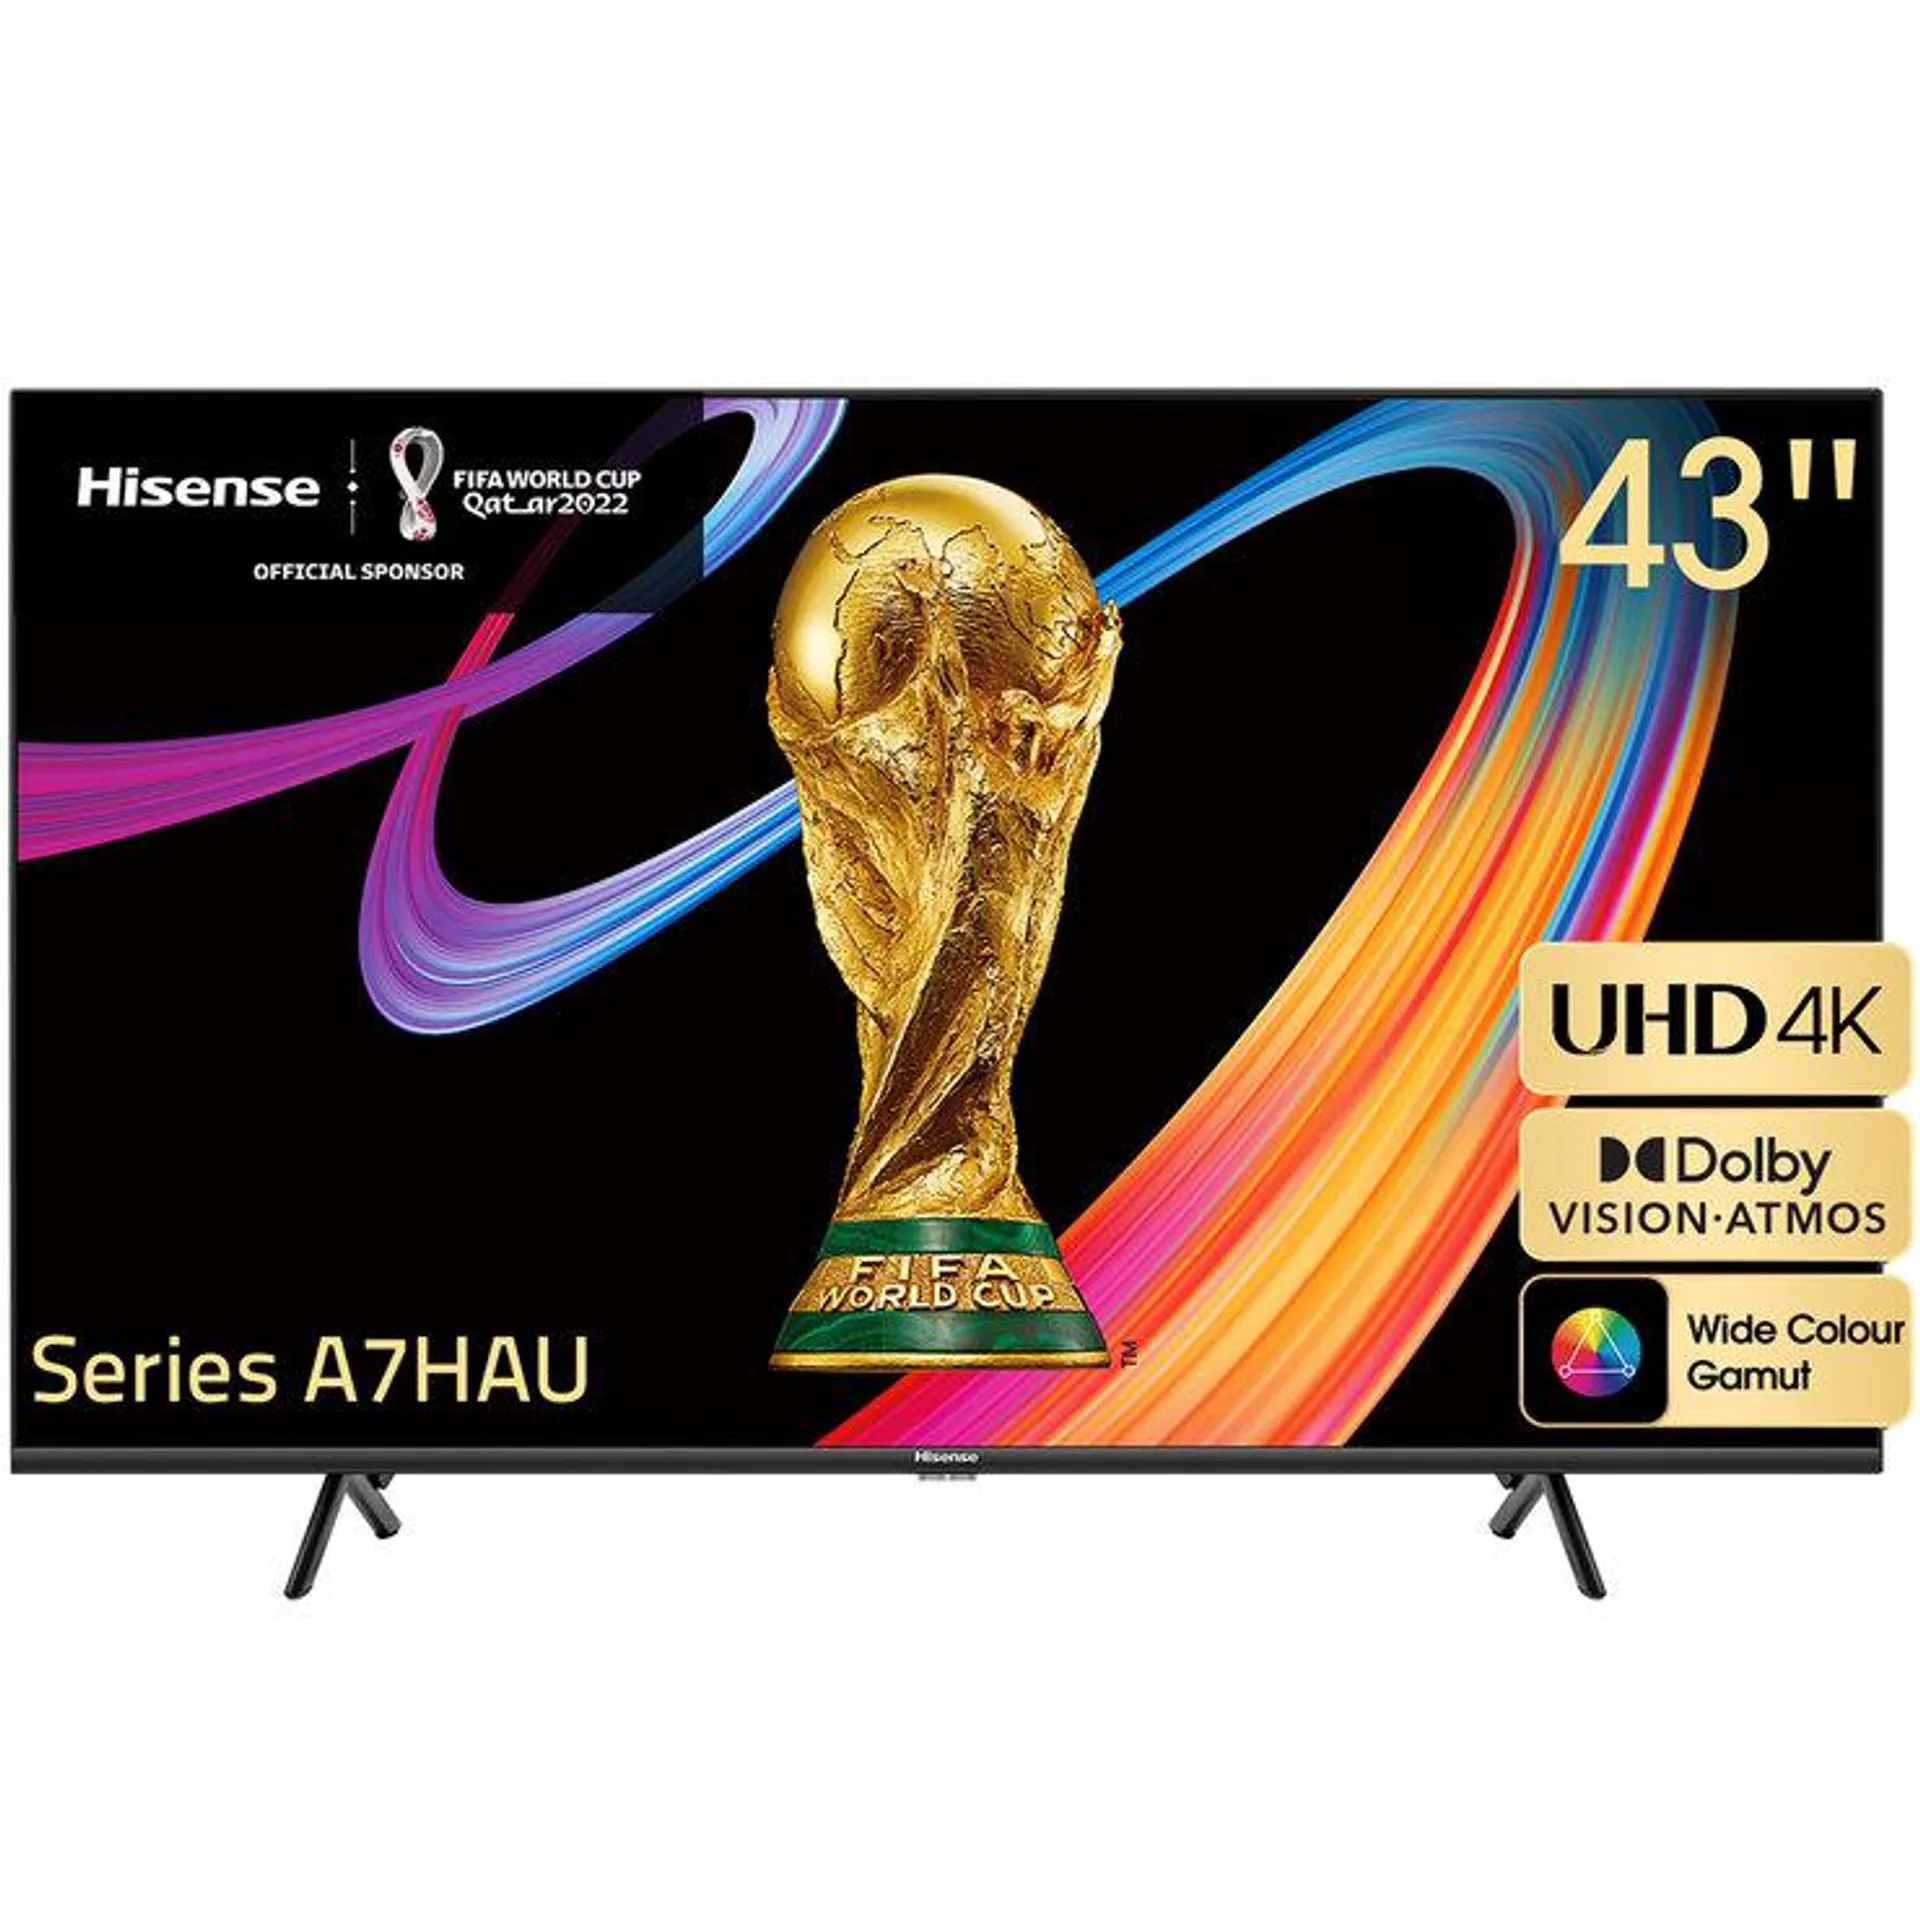 Hisense 43 Inch UHD 4K Smart TV 43A7HAU